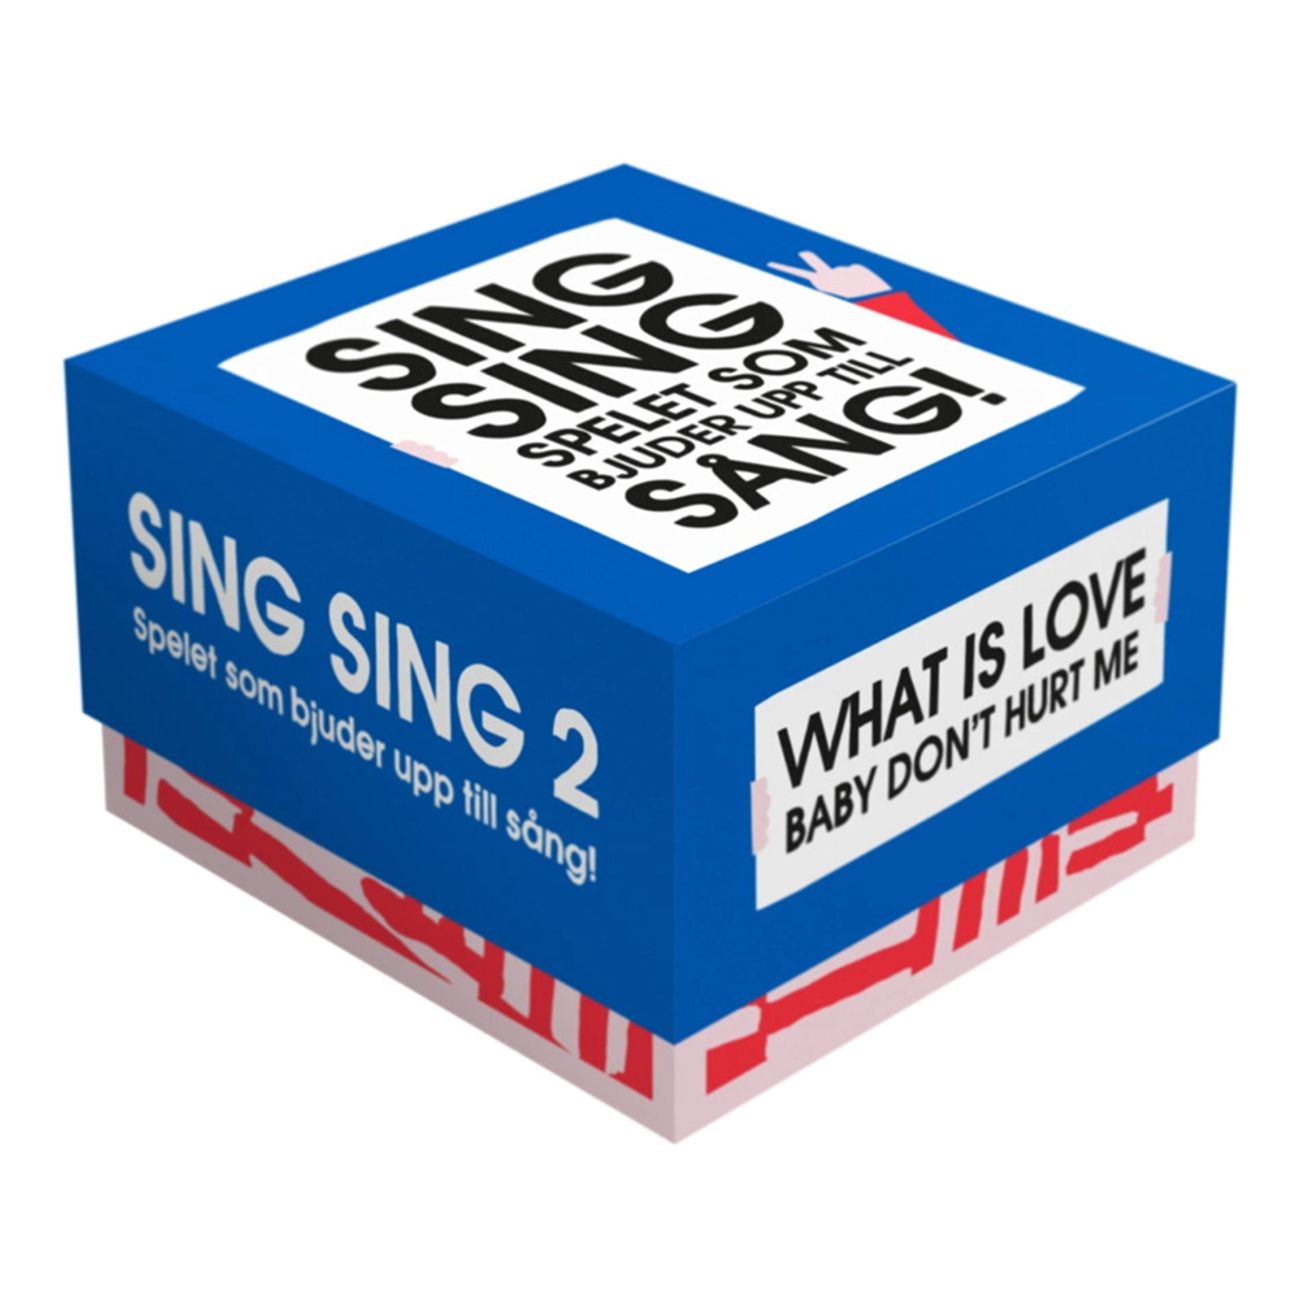 sing-sing-2-sallskapsspel-80905-1